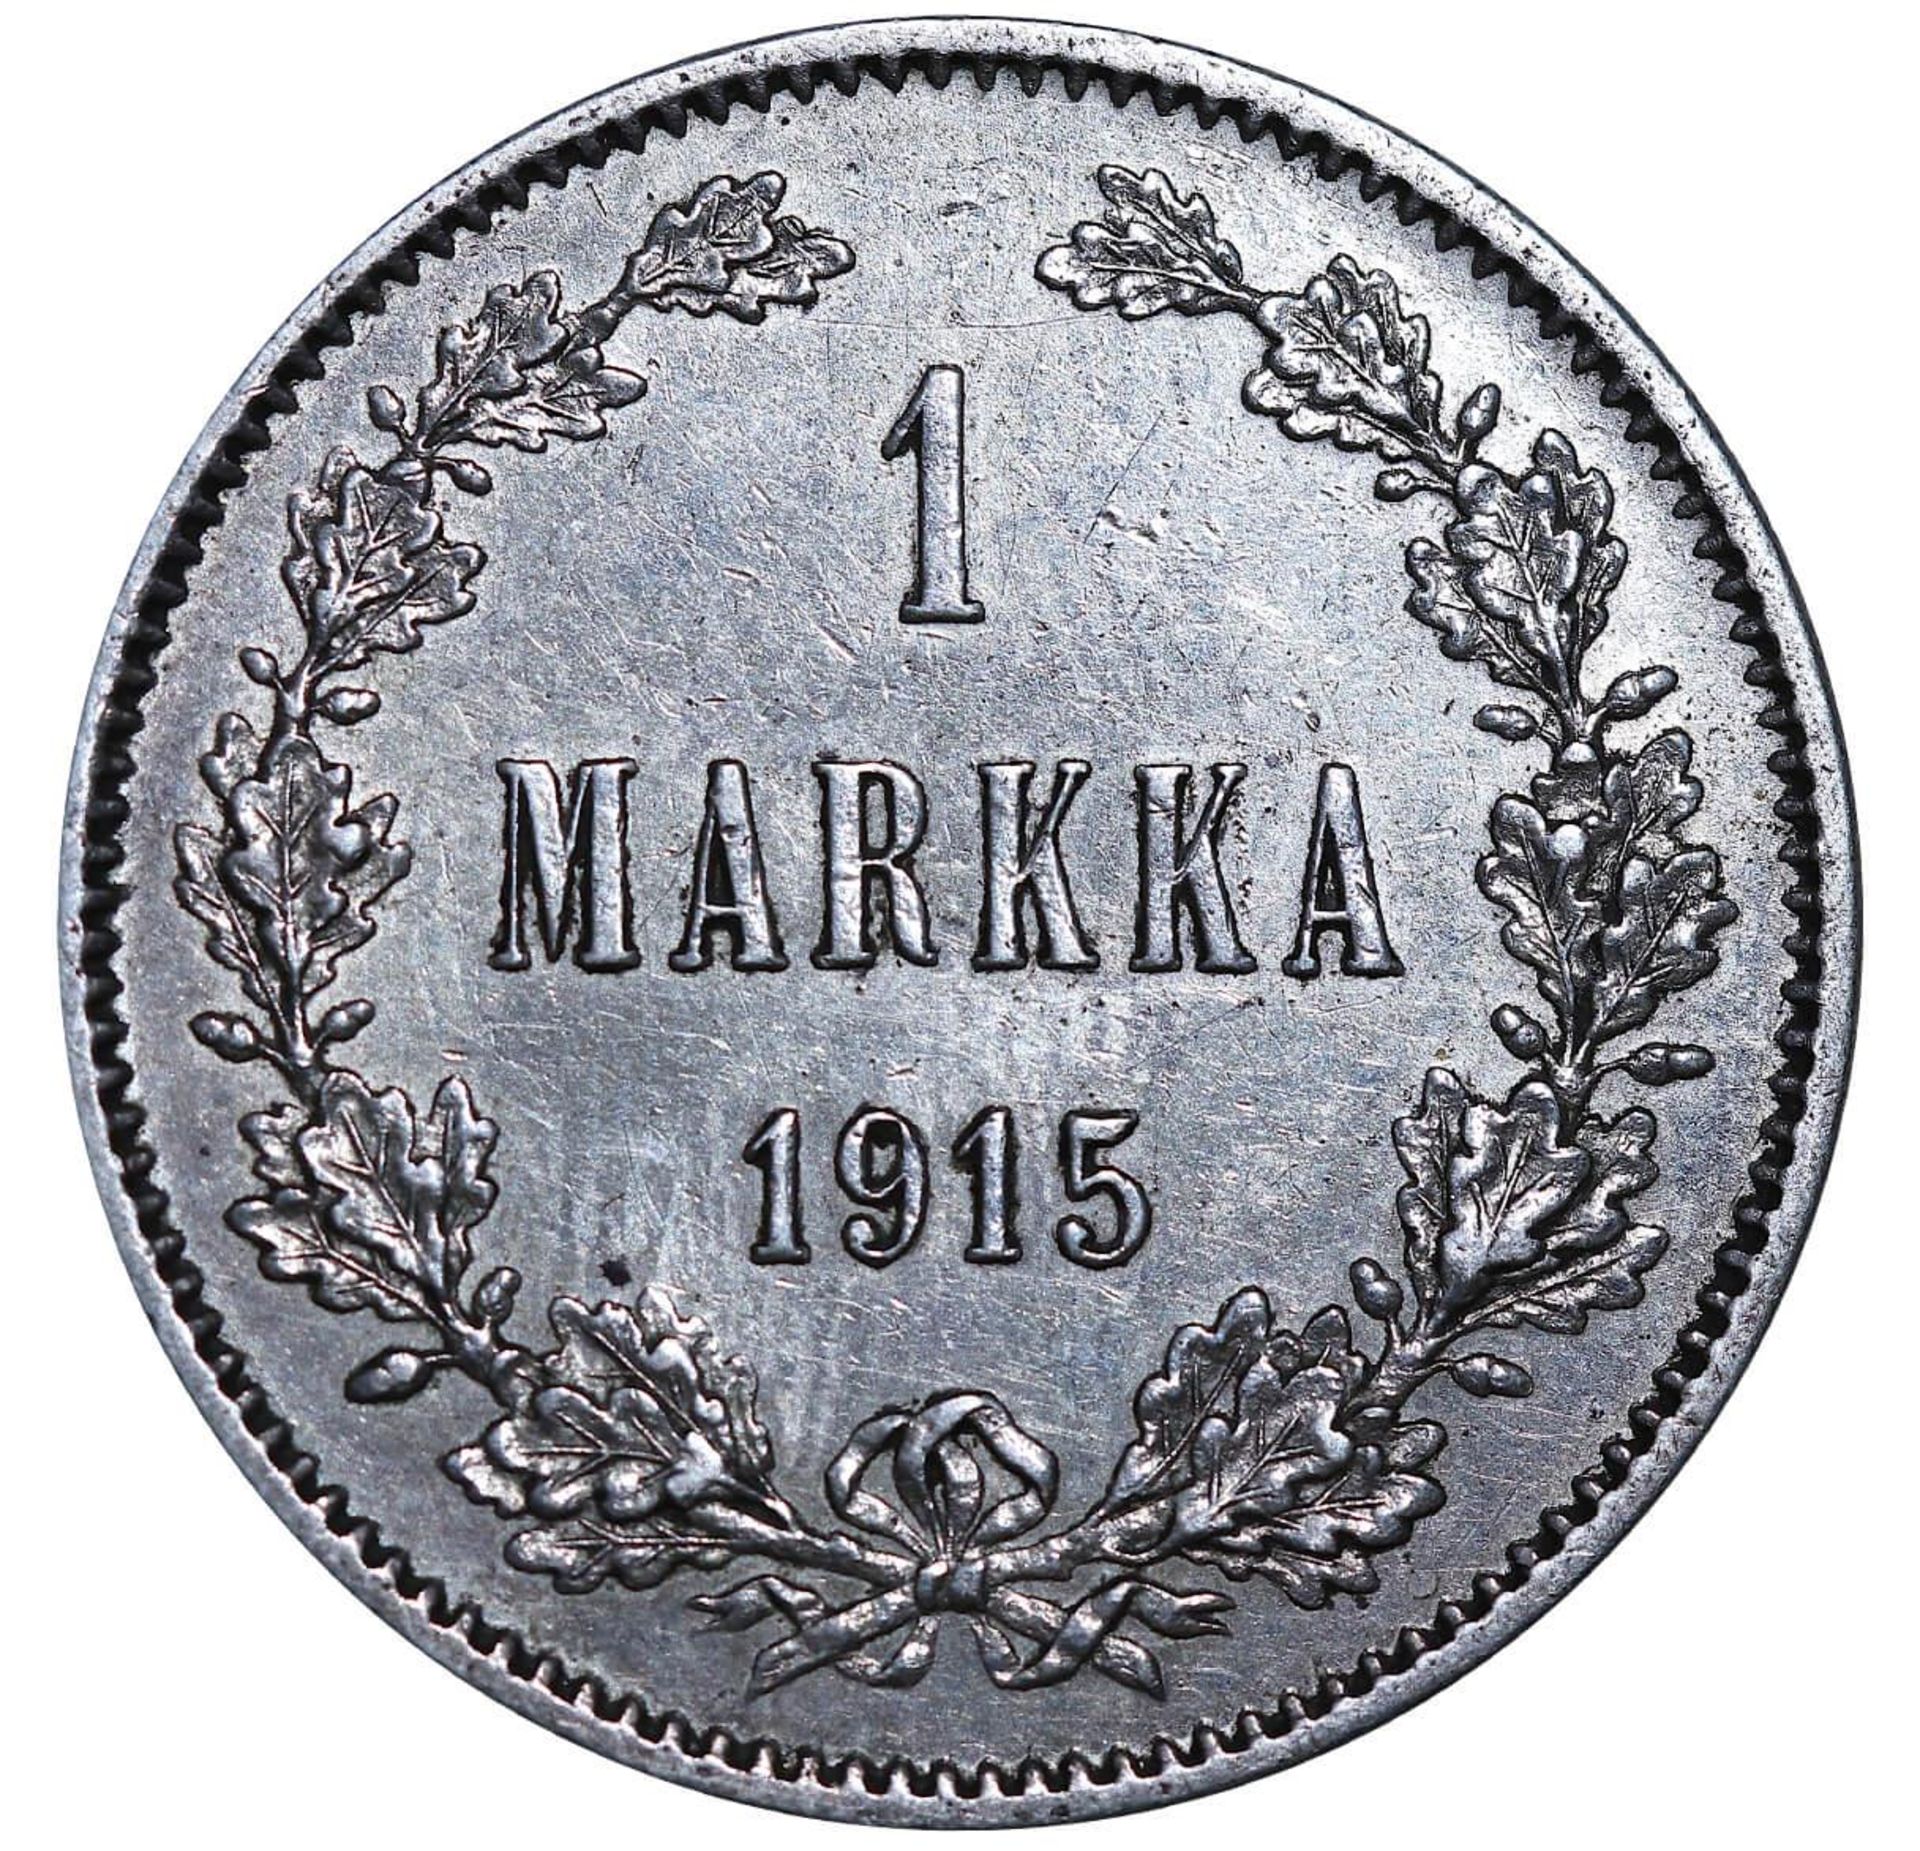 Russian Empire, 1 Markka, 1915 year, S - Image 2 of 3